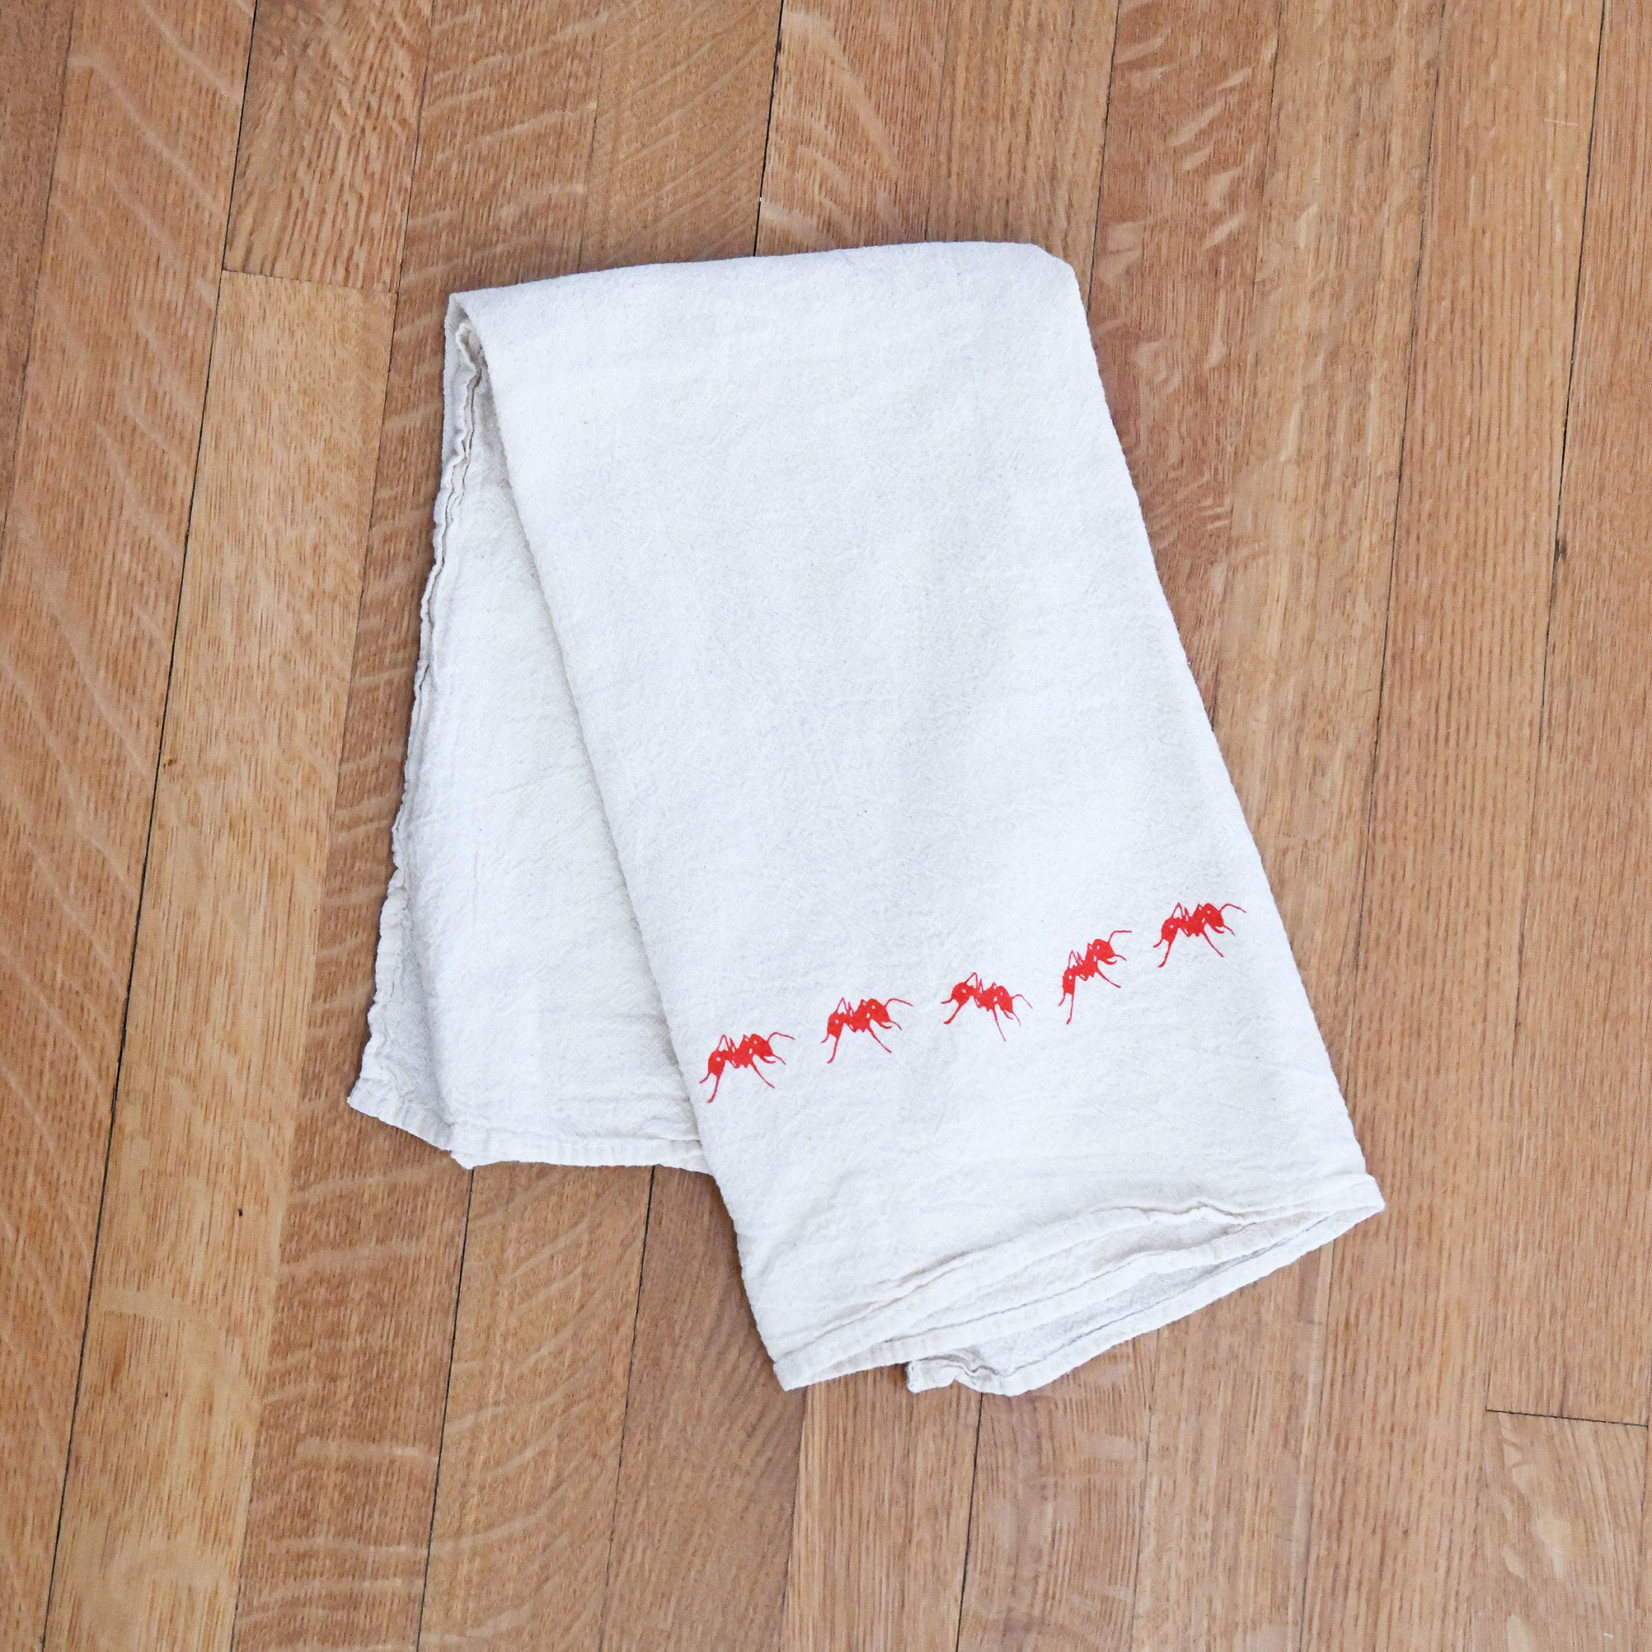 Red Ants Pants Tea Towel